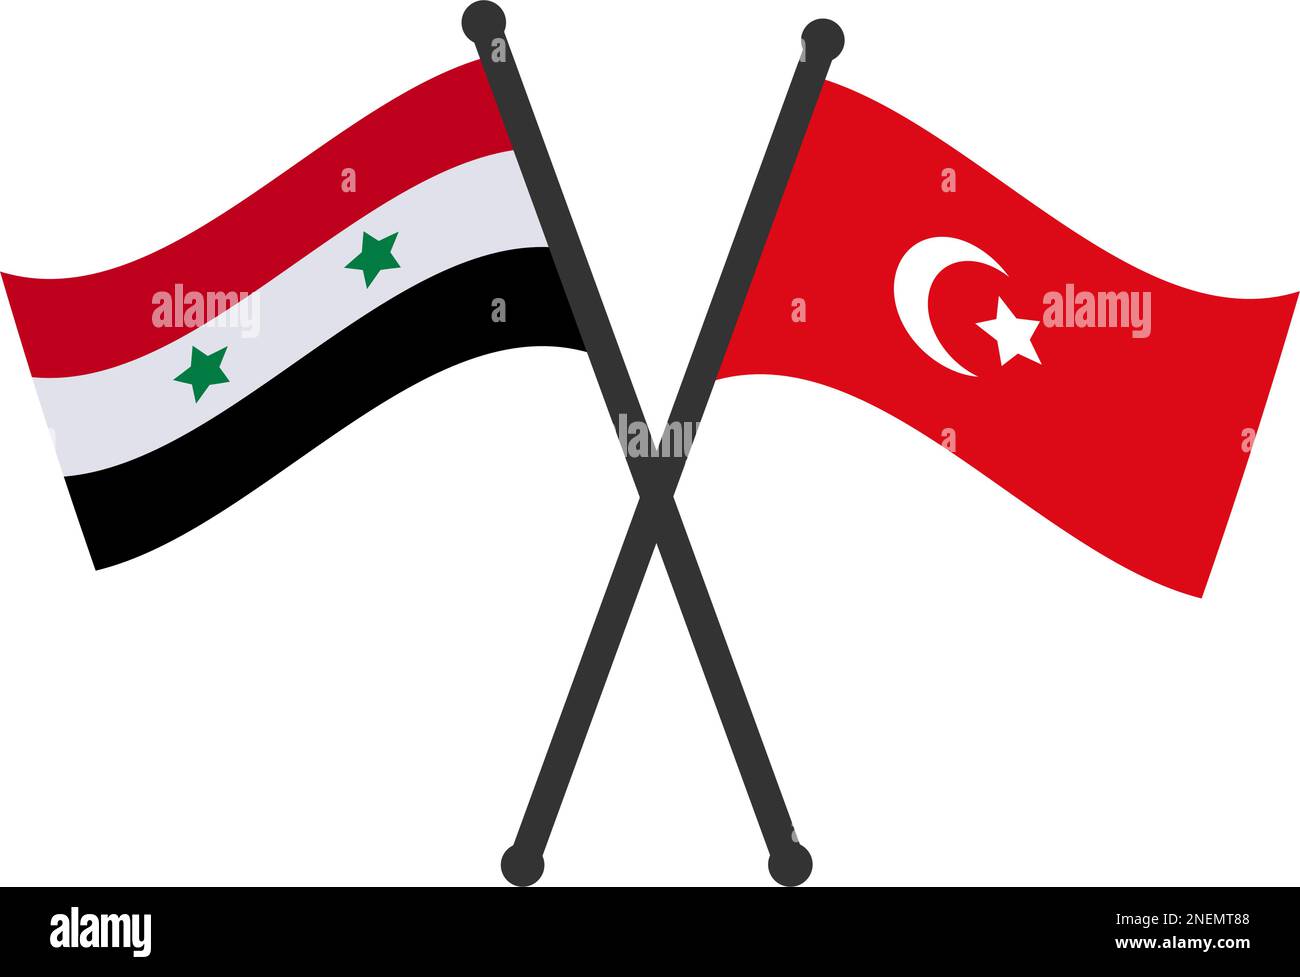 Türkei-Flagge mit durchgestrichener syrischer Flagge. Zwei Tafelflaggen bedeuten die diplomatischen Beziehungen zwischen Syrien und der Türkei. Syrische und türkische Nachbarländer Nat Stock Vektor